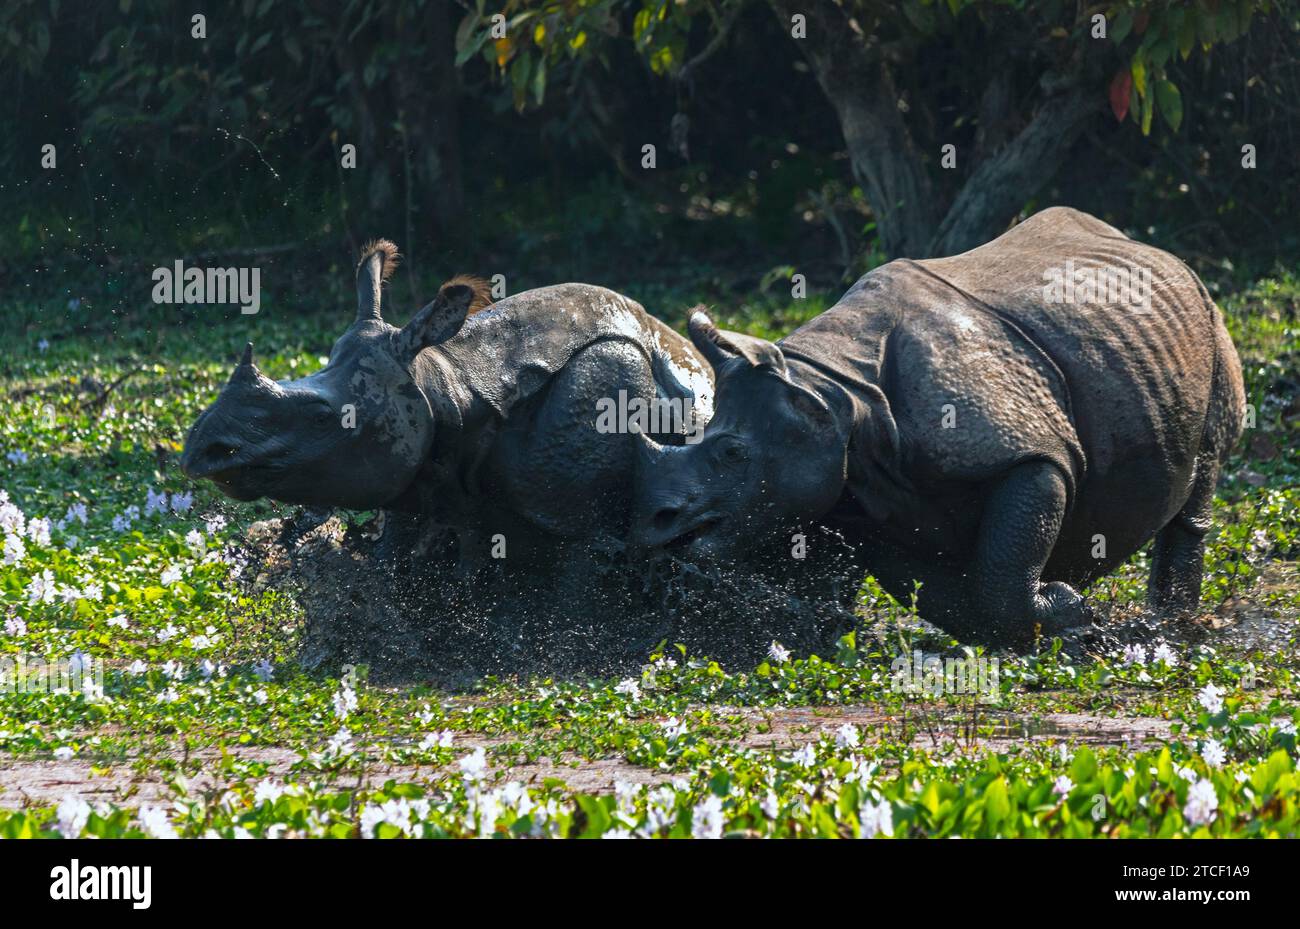 Rhino Rumble: Due potenti rinoceronti indiani maschi, uno con corna, combattono per ottenere il controllo del territorio. Foto Stock